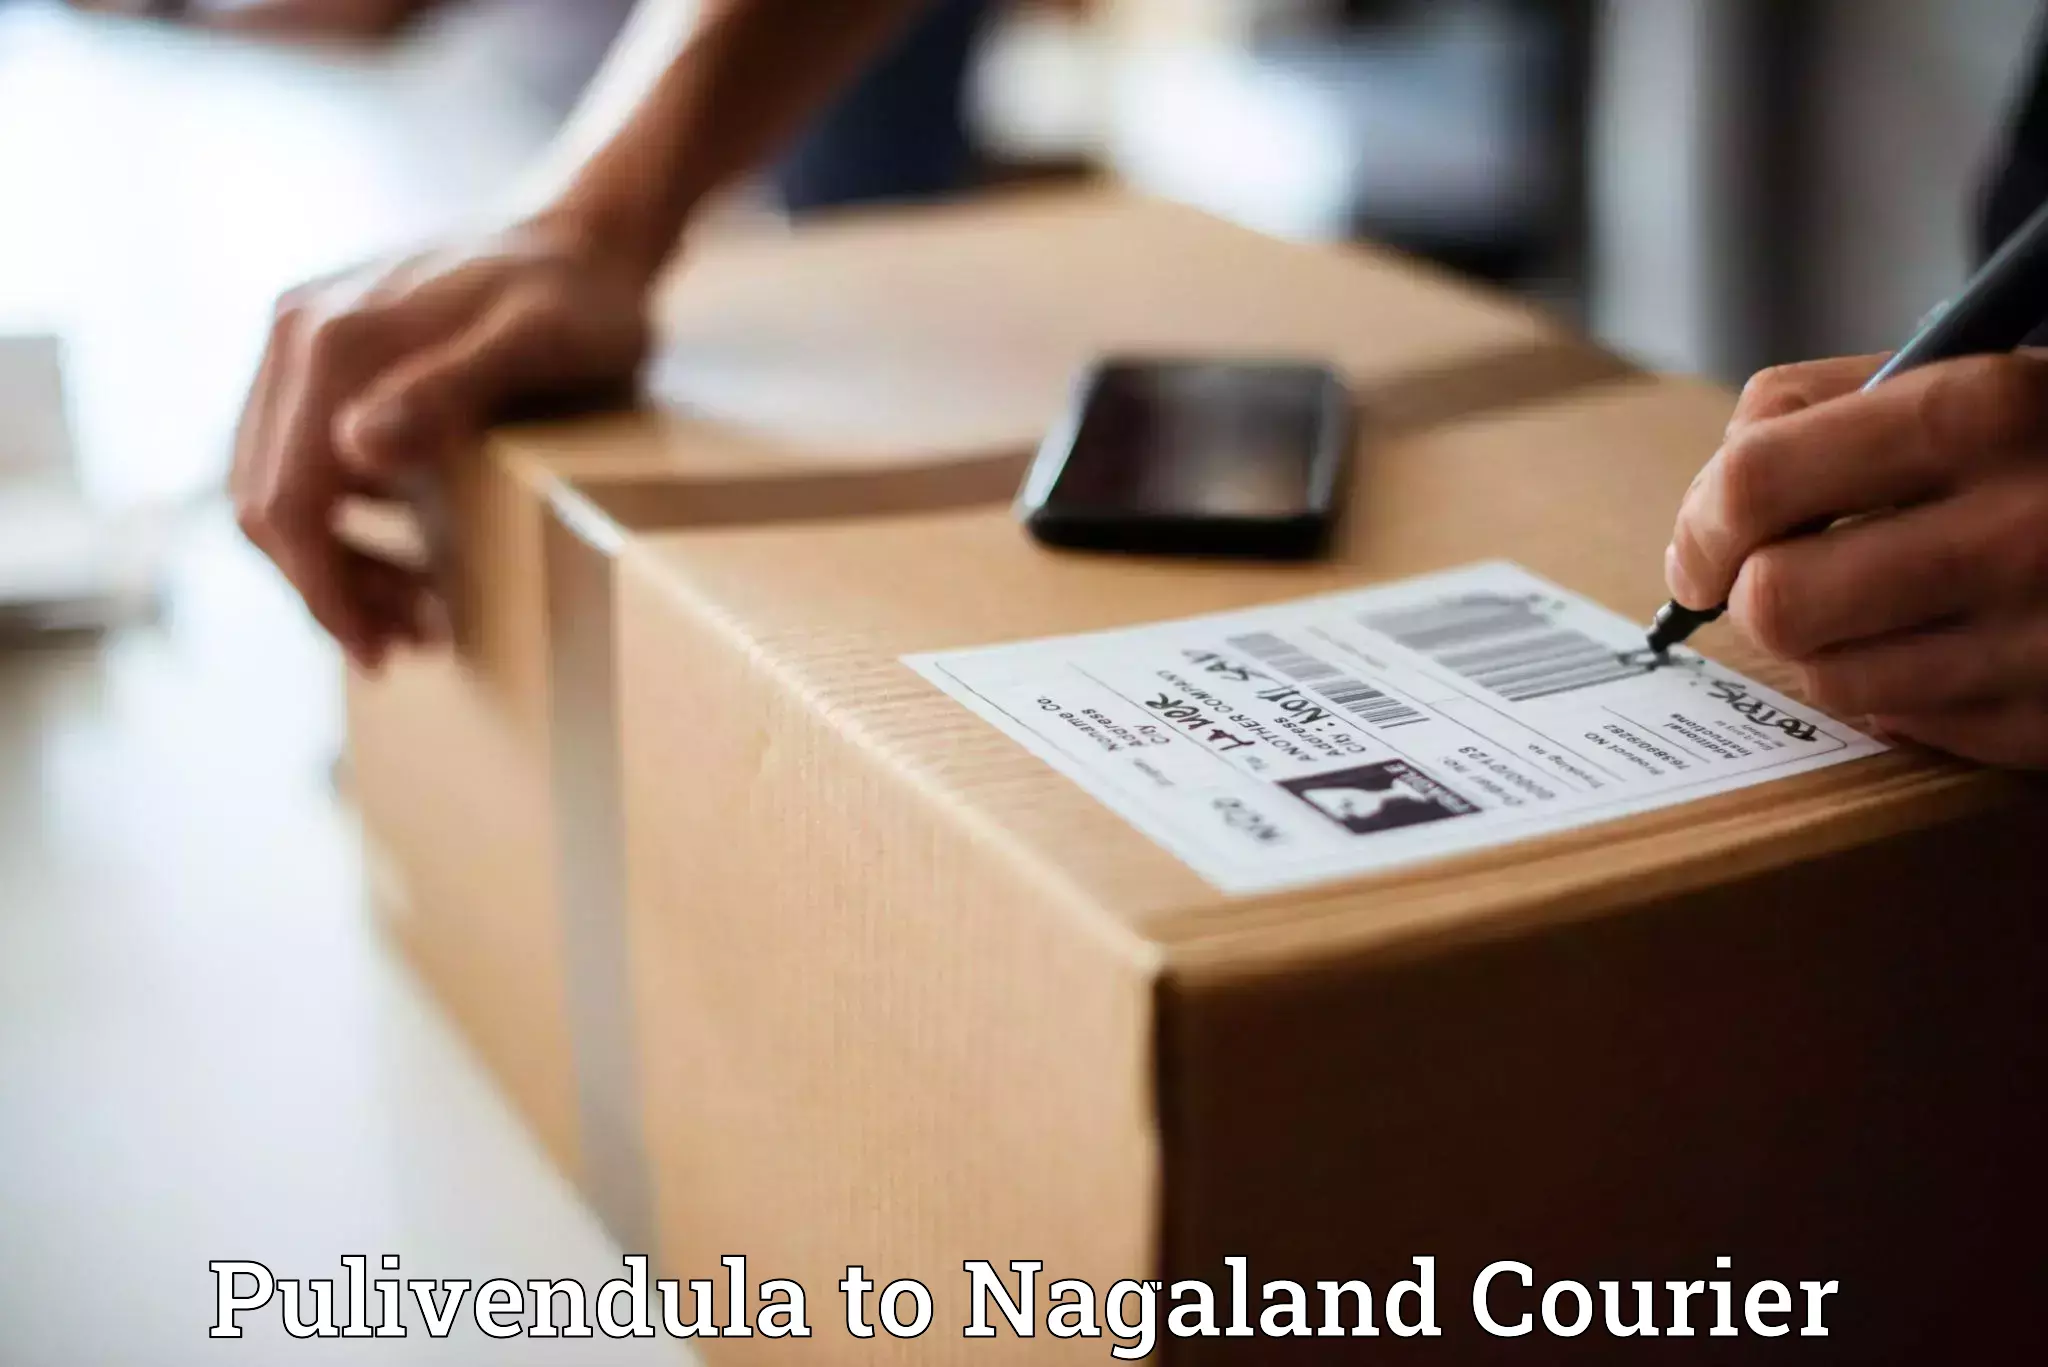 Express package handling Pulivendula to Nagaland